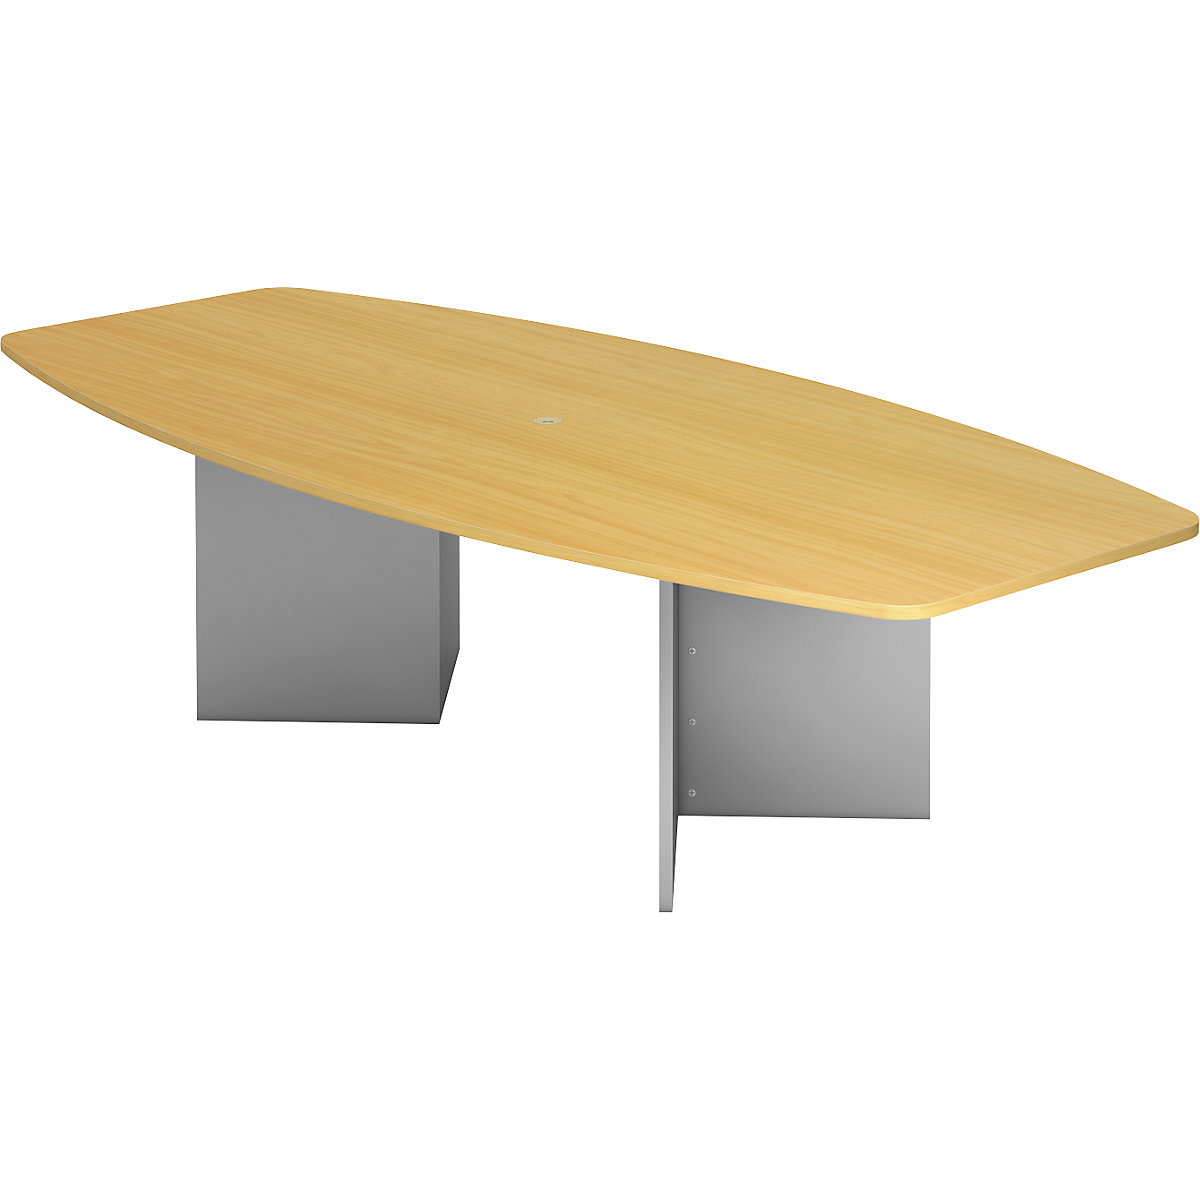 Konferenčný stôl, variant podstavca bočnice, pre 10 osôb, vzor buk-4